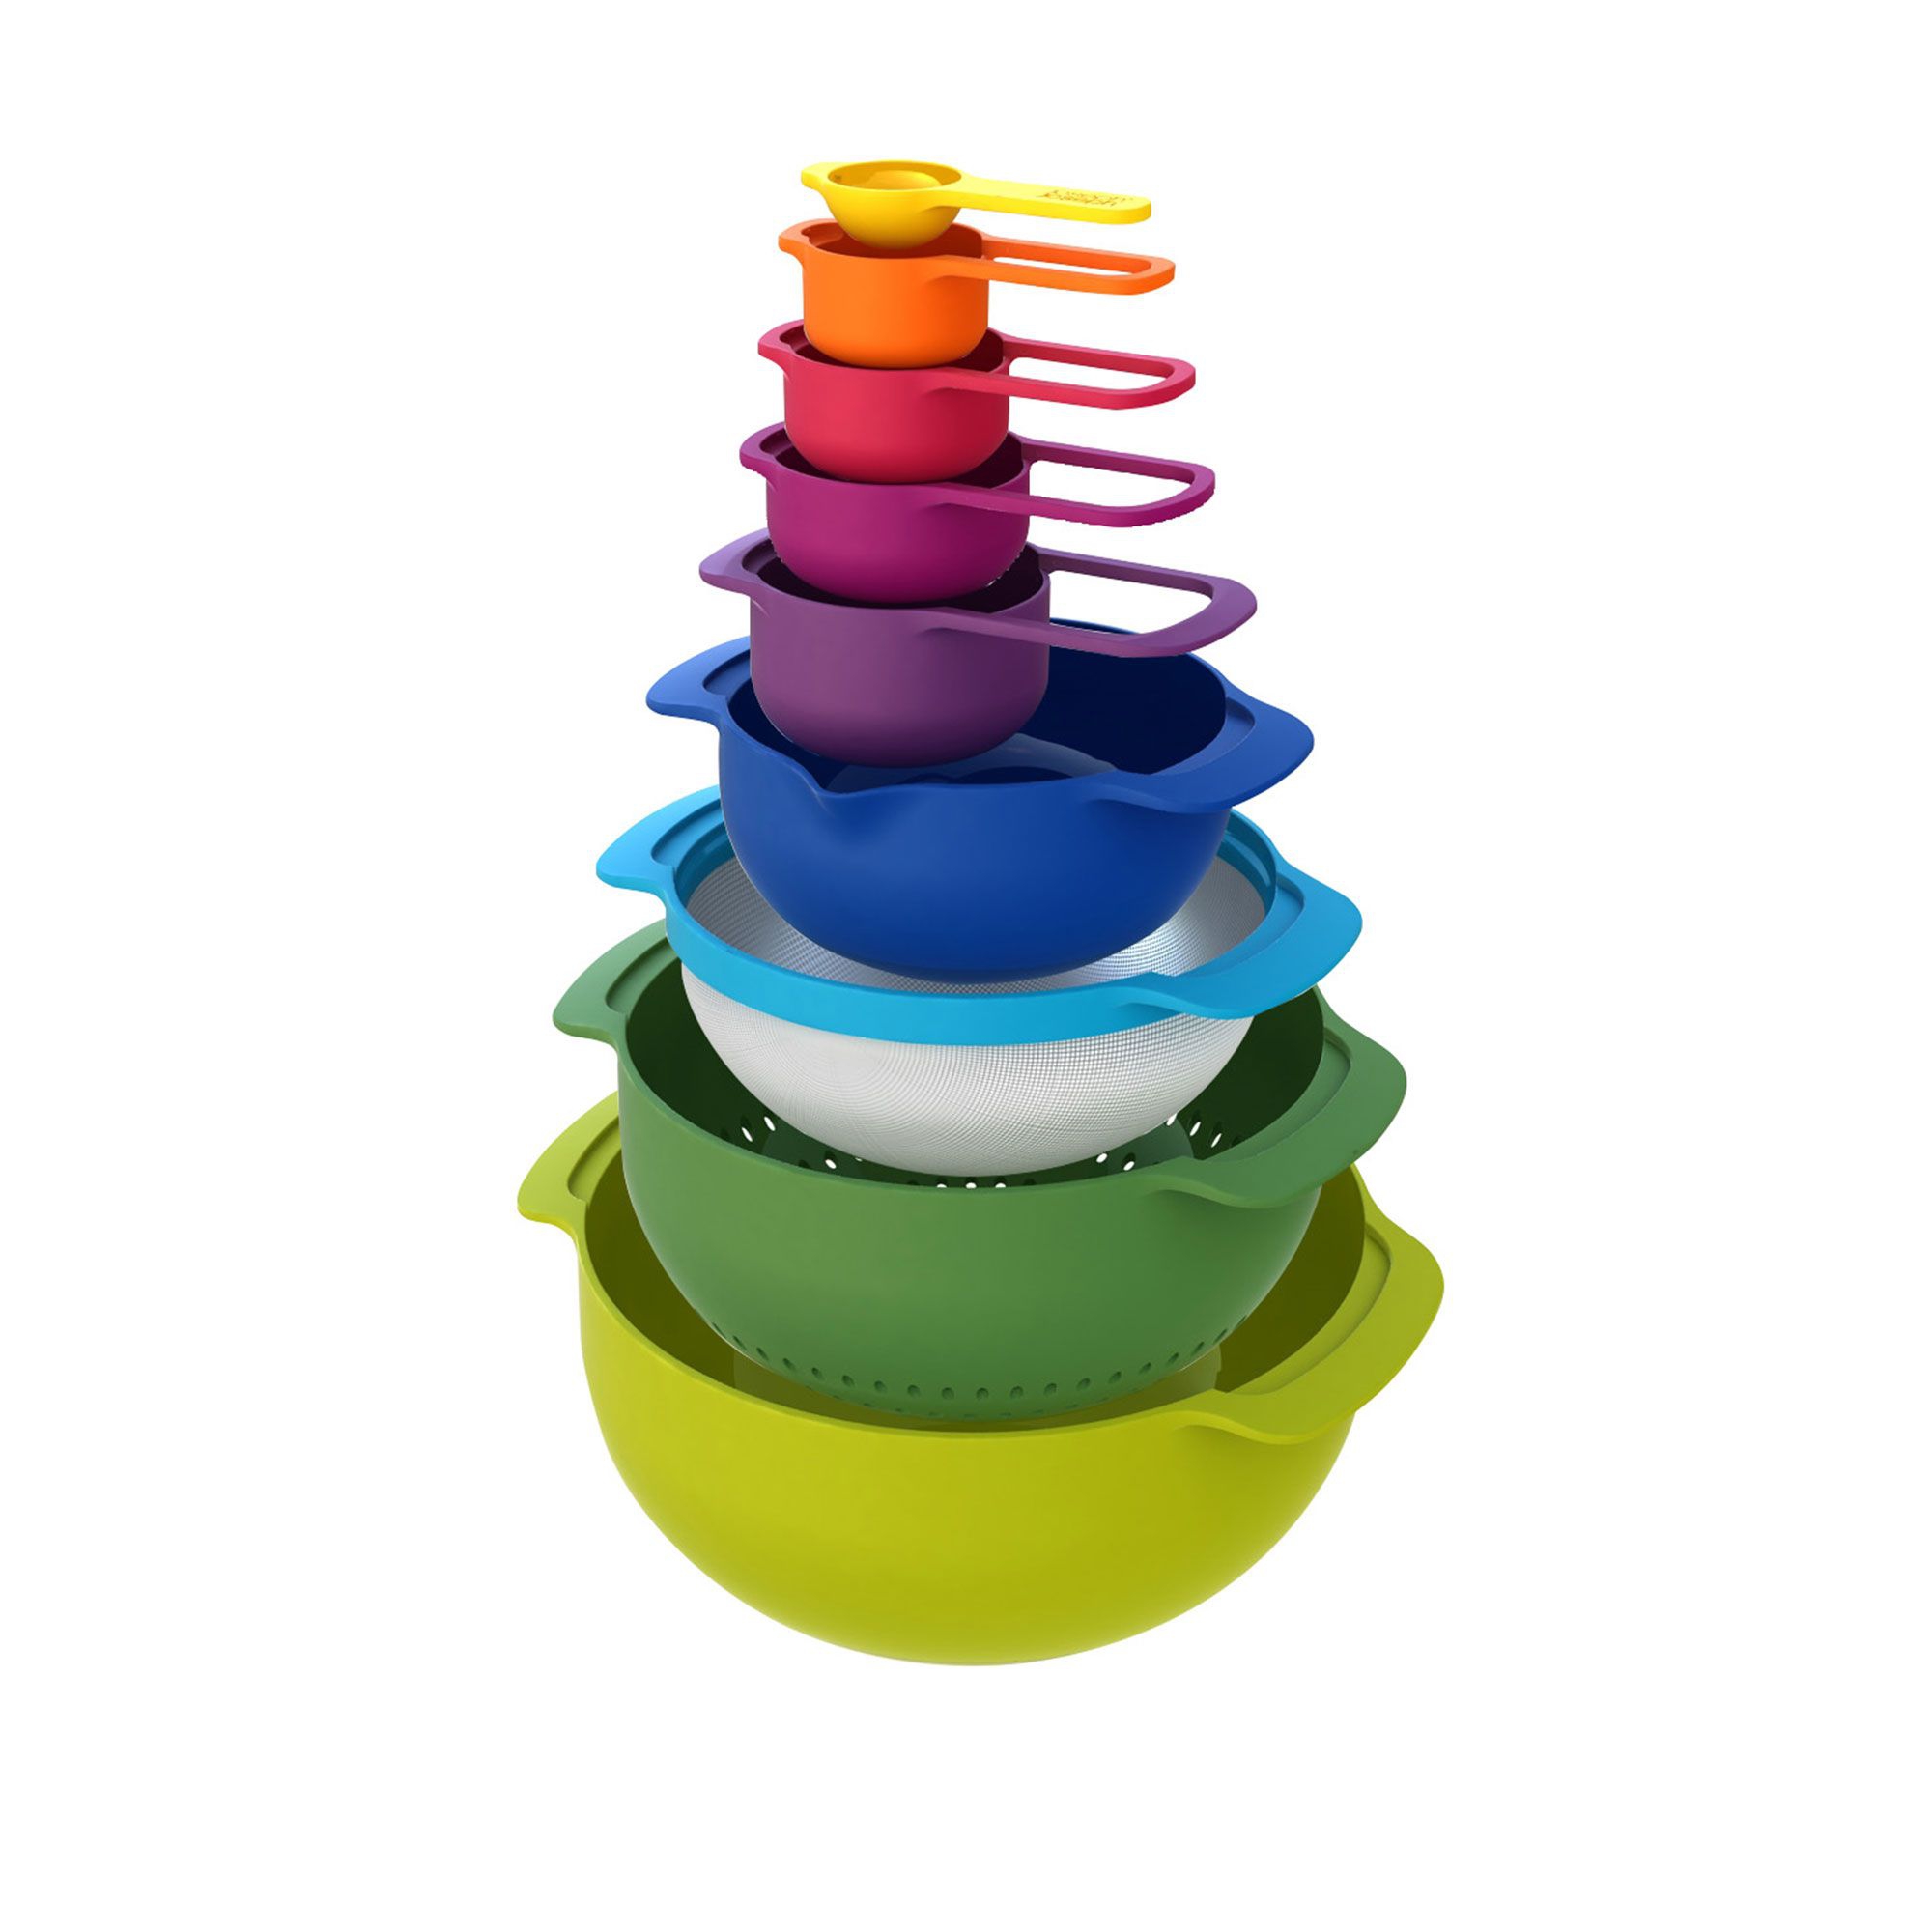 Joseph Joseph - Nest™ 9 Plus Bowl Set Colorful